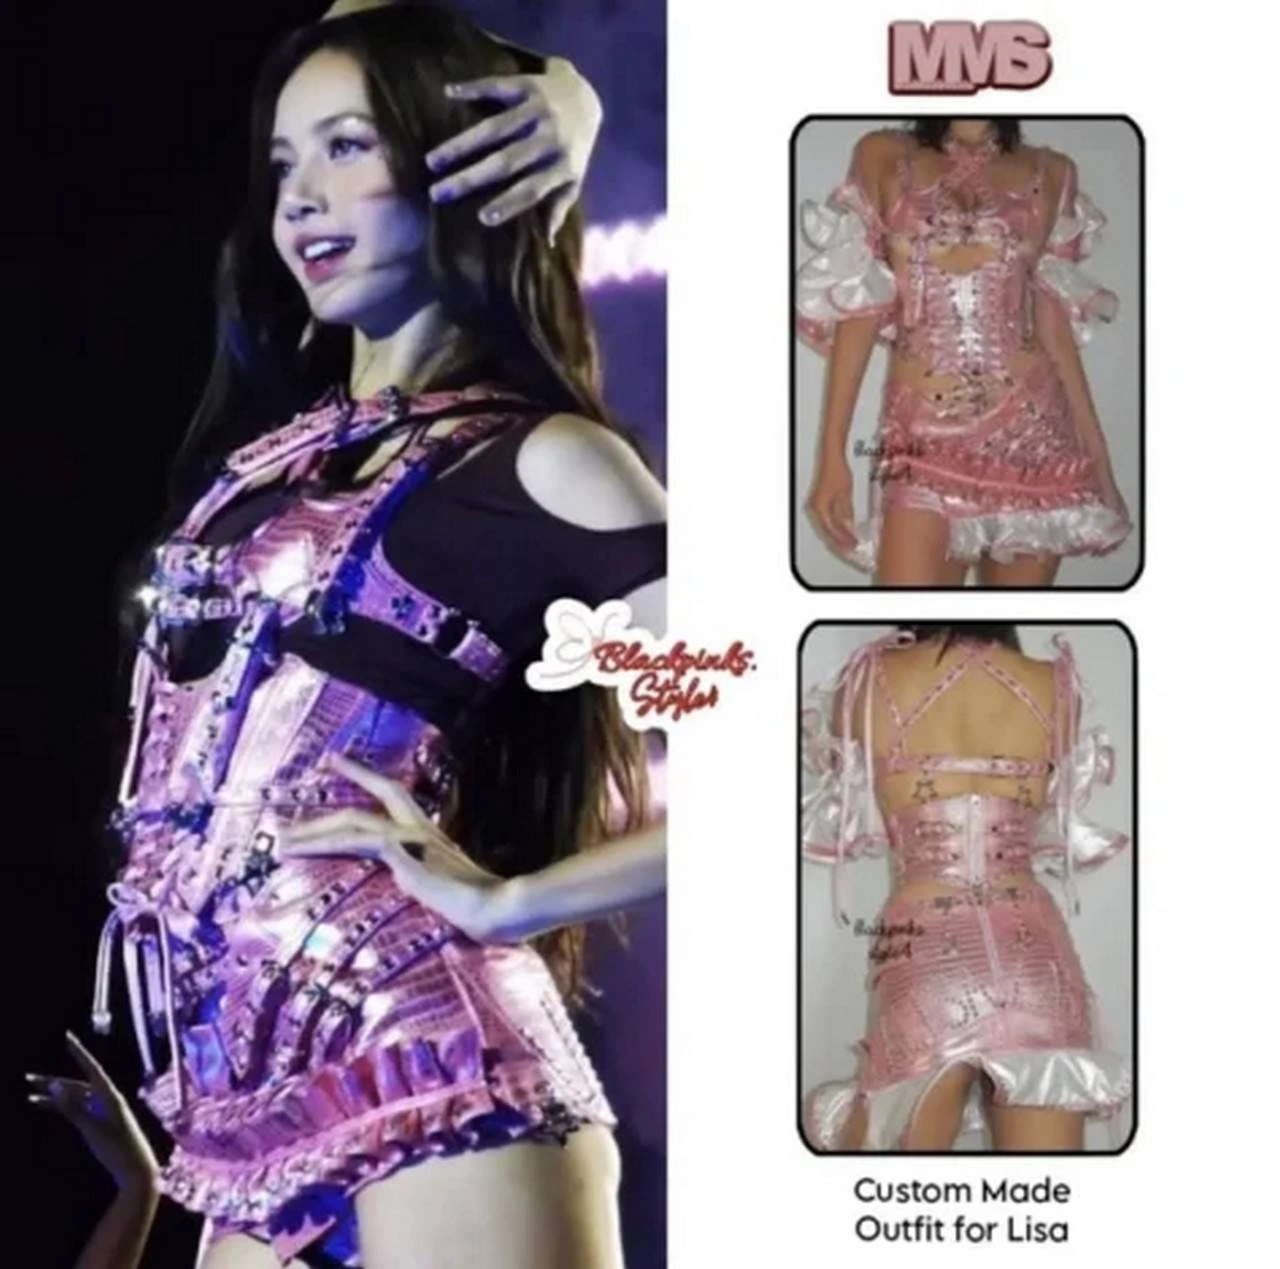 Stylist Lisa Bikin Geram Fans Kembali Modif Kostum Sang Idola Terlalu Terbuka Di Konser